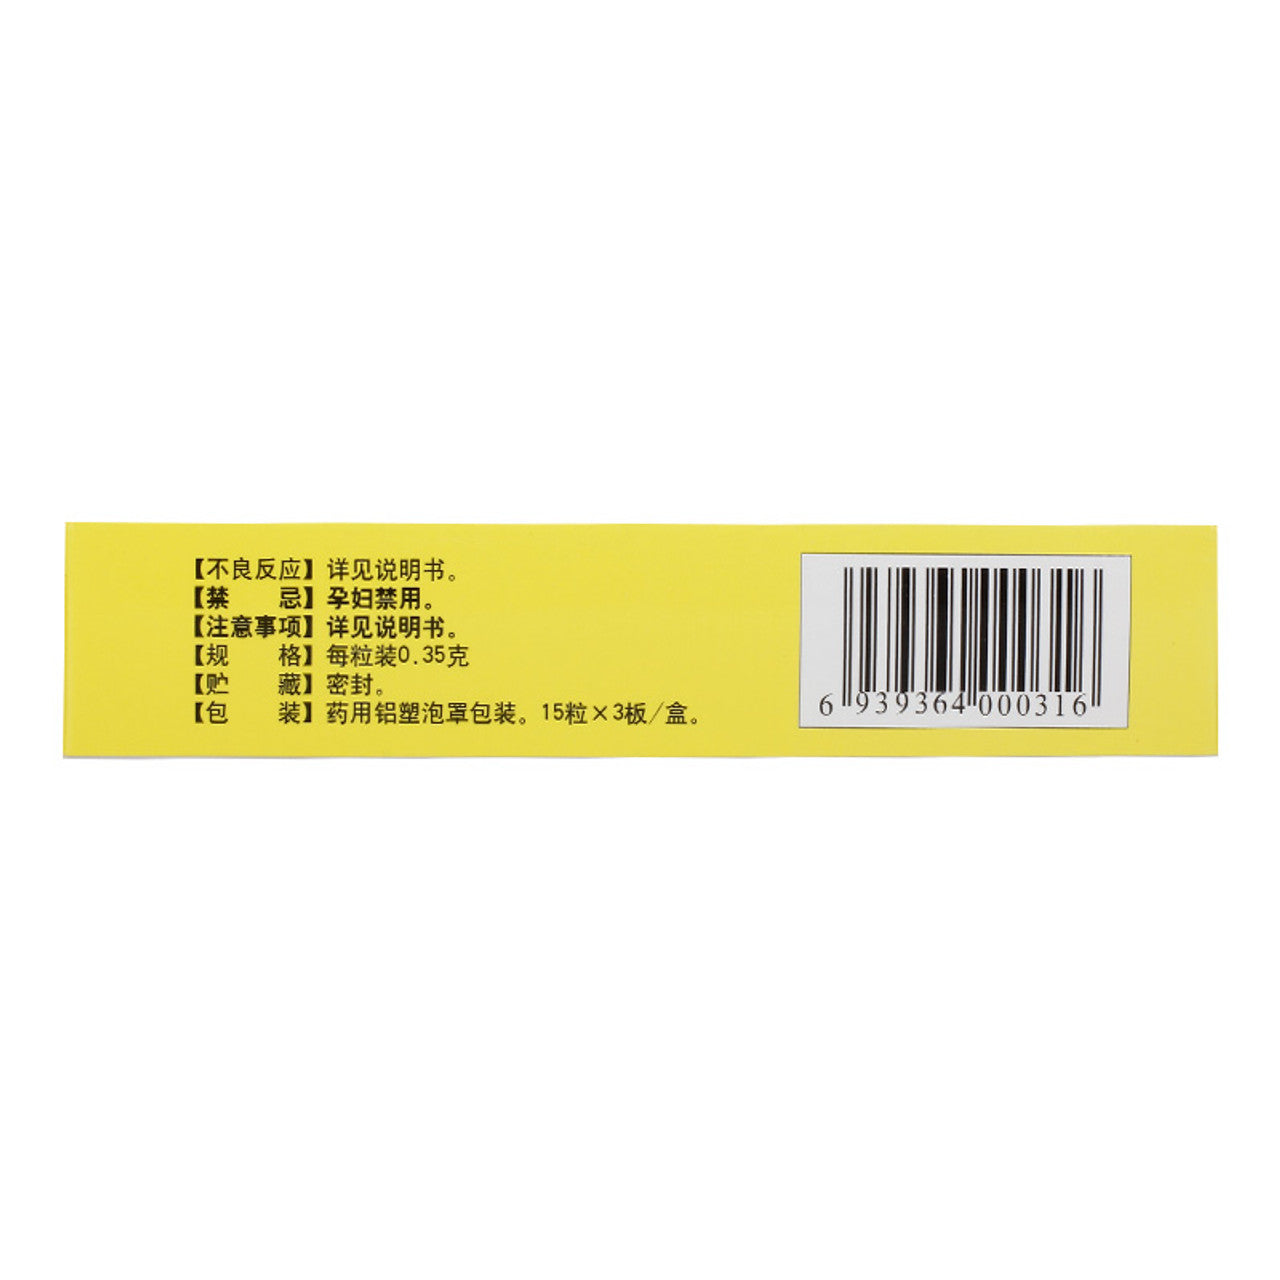 Traditional Chinese Medicine.  Zhichuang Jiaonang or Zhichuang Capsules for Hemorrhoids. Zhi Chuang Jiao Nang. 0.35g*45 Capsules*5 boxes